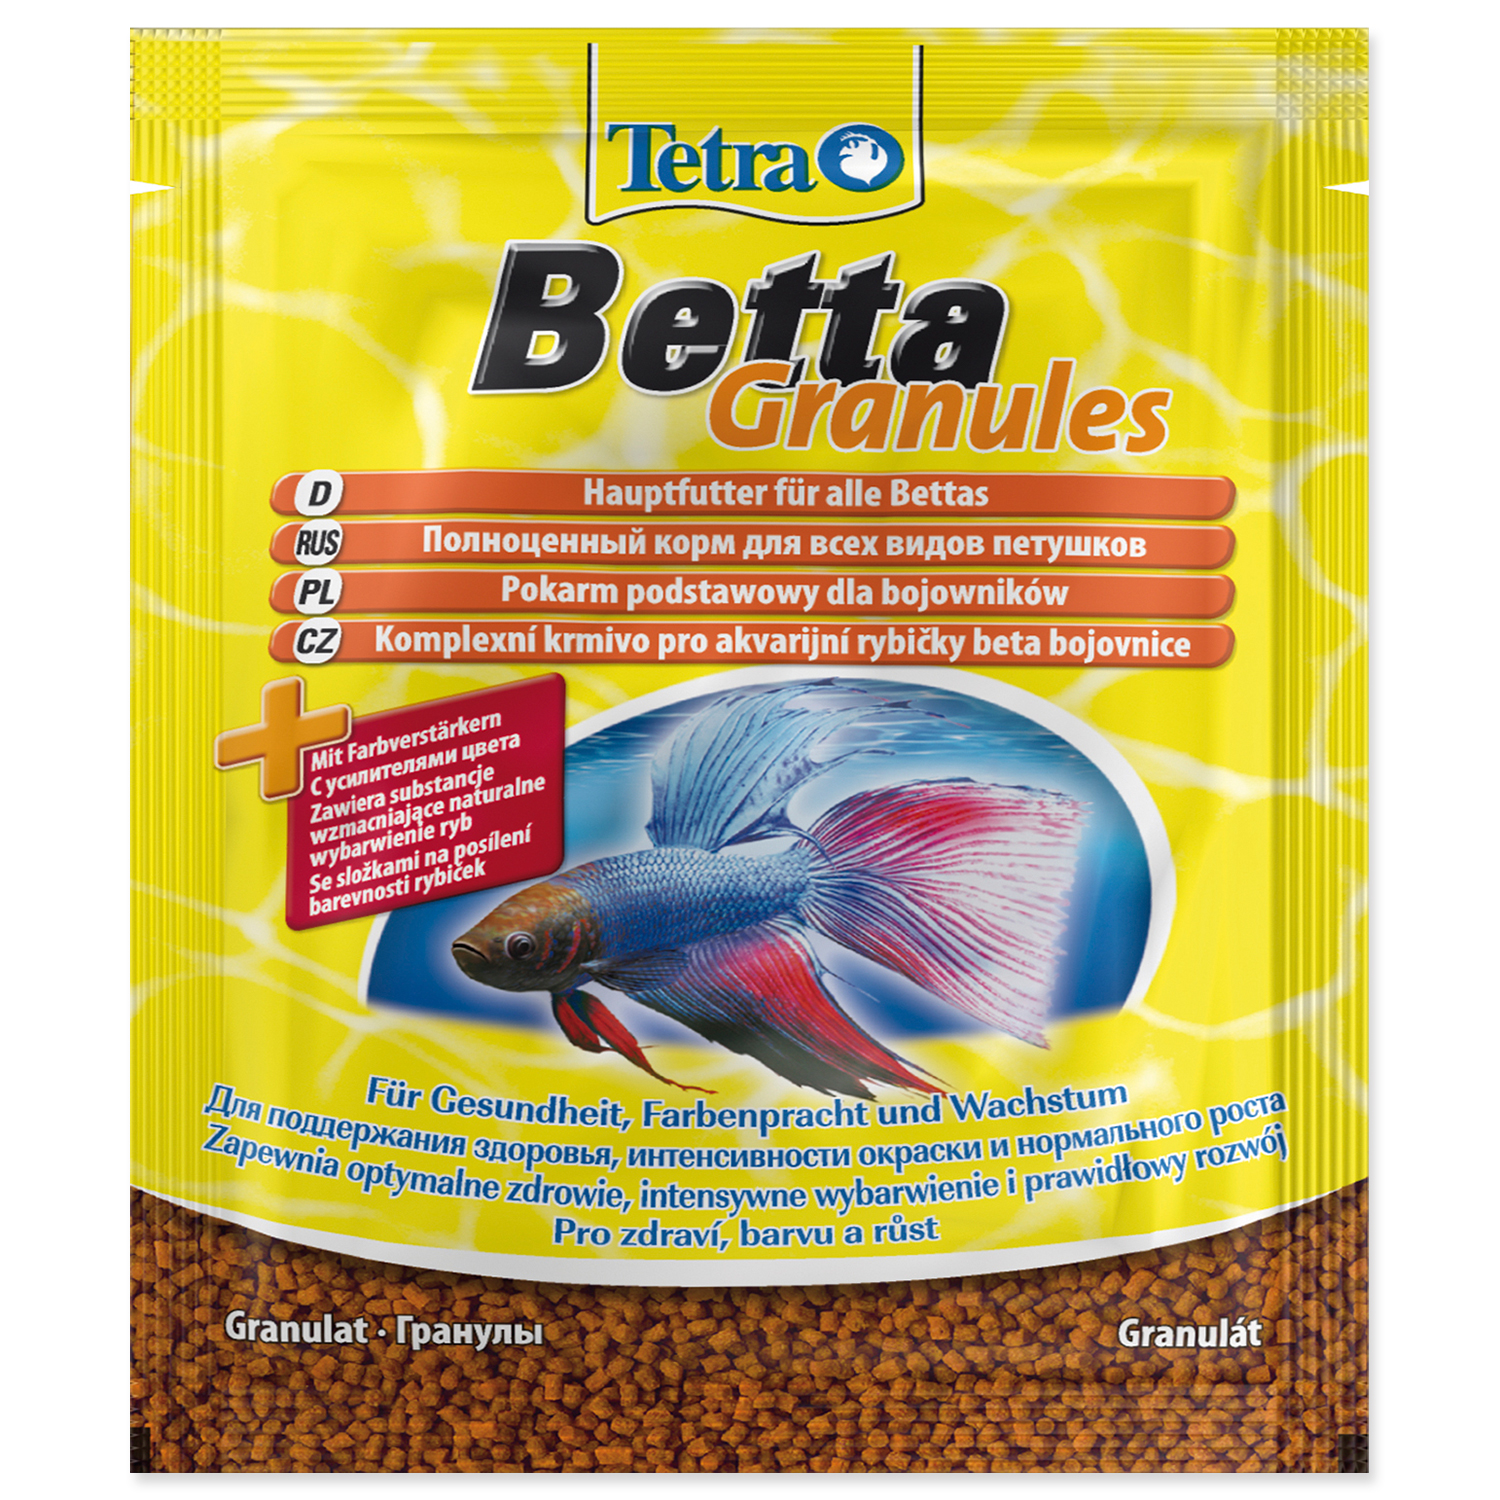 Levně TETRA Betta Granules sáček 5 g